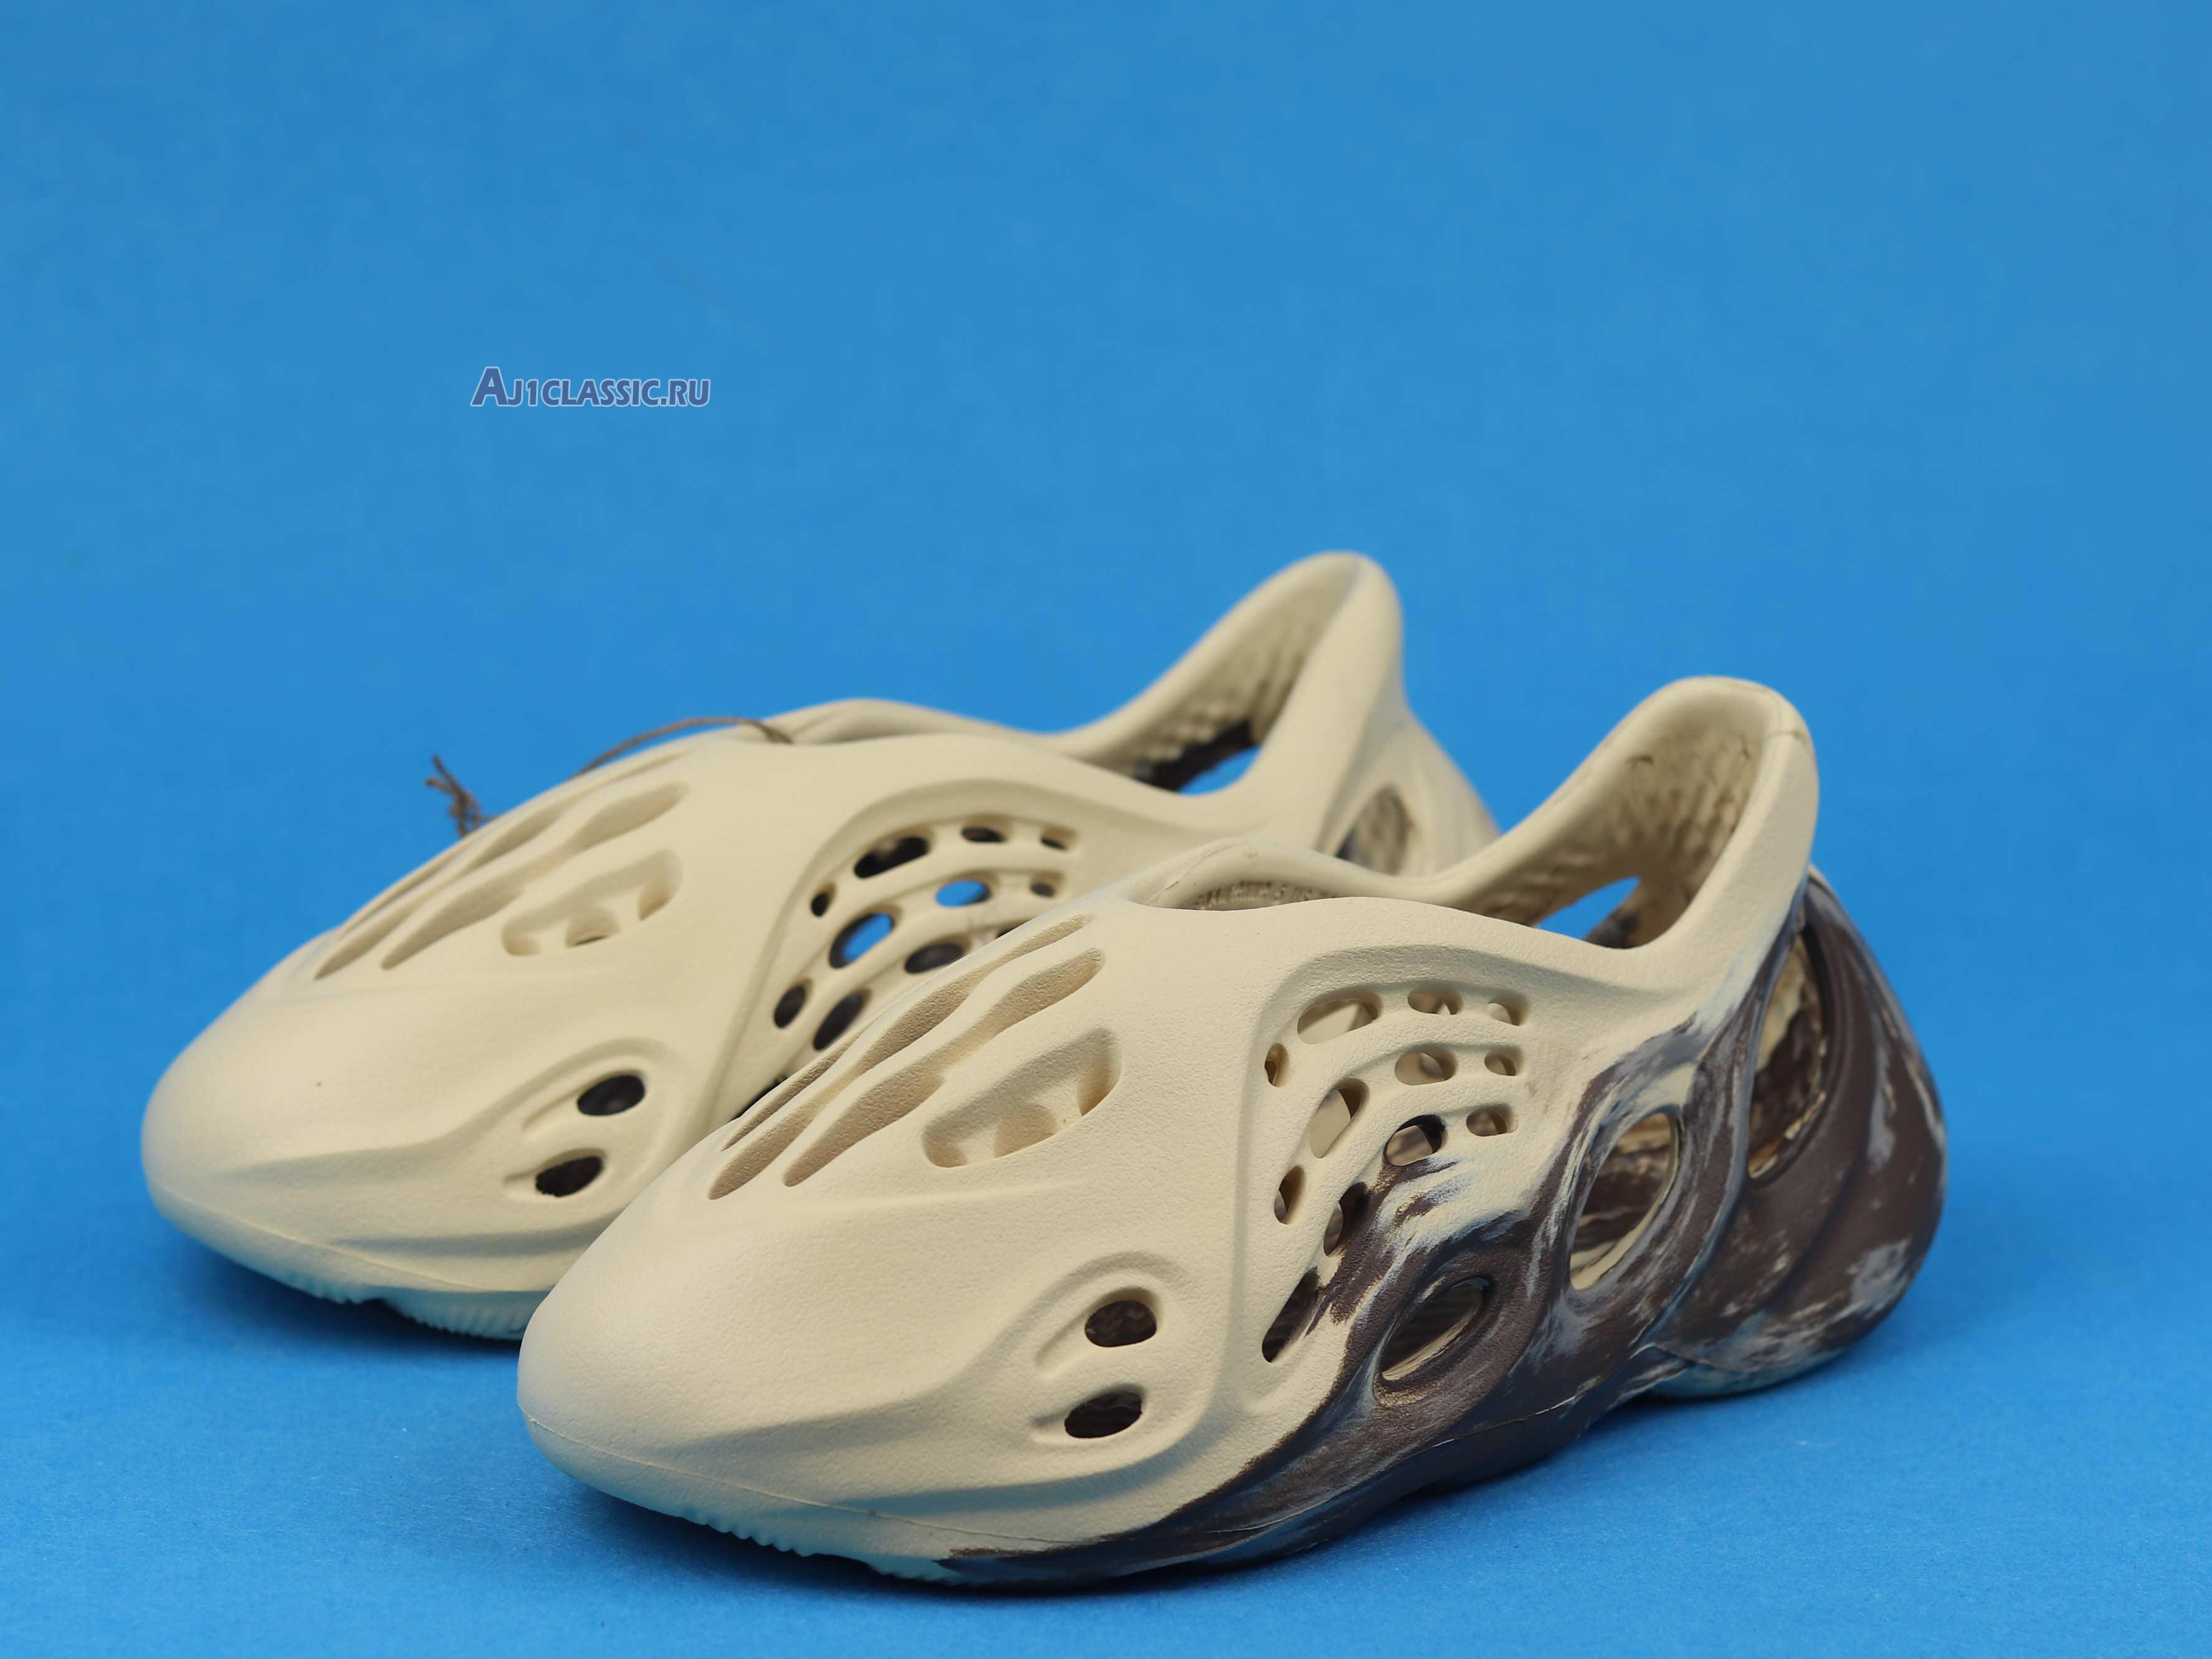 Adidas Yeezy Foam Runner "MX Cream Clay" GX8774